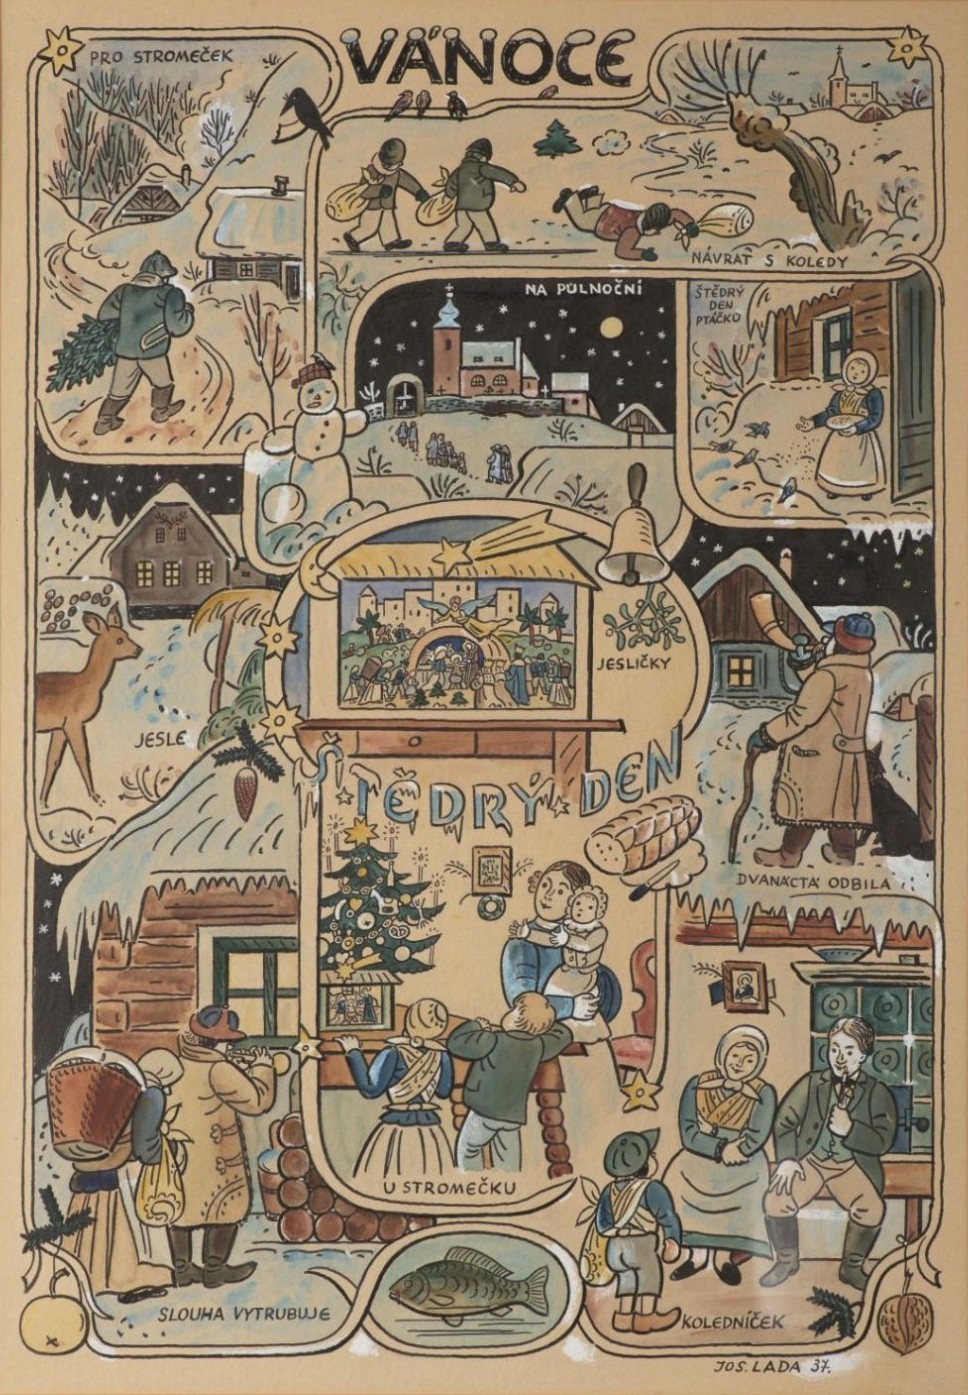 Josef Lada: Vánoce – Štědrý den, 1937 tuš, akvarel a běloba na lepence, 63 cm x 44 cm vyvolávací cena: 900 000 Kč (+ provize 24%)  Arthouse Hejtmánek 10. 12. 2019